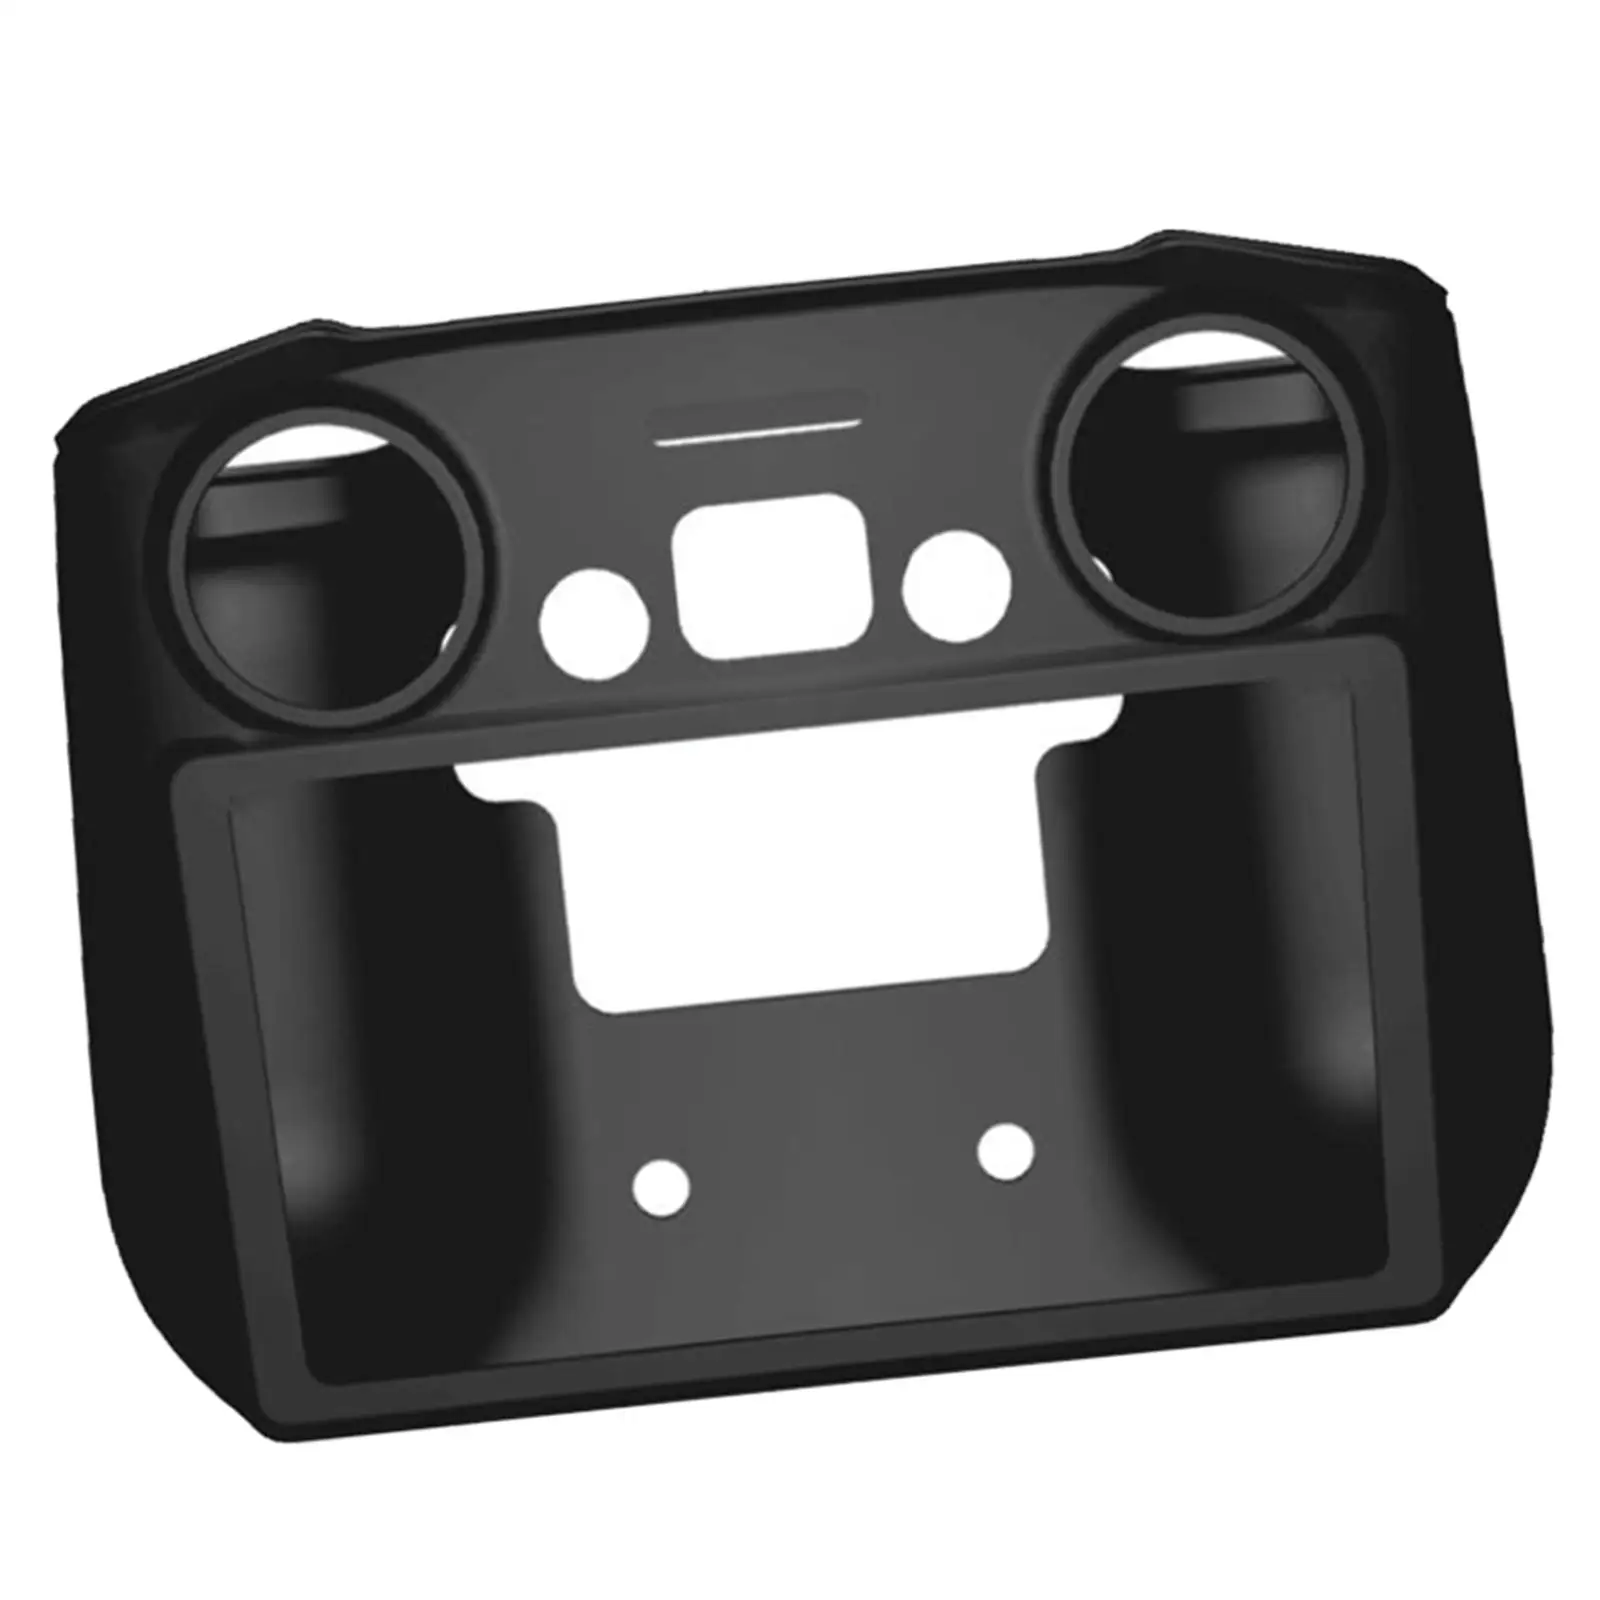 Remote Controller Silicone Case Anti Scratch Portable Soft Case Protective Cover for DJI Mini 3 Pro Drone Controller Accessories